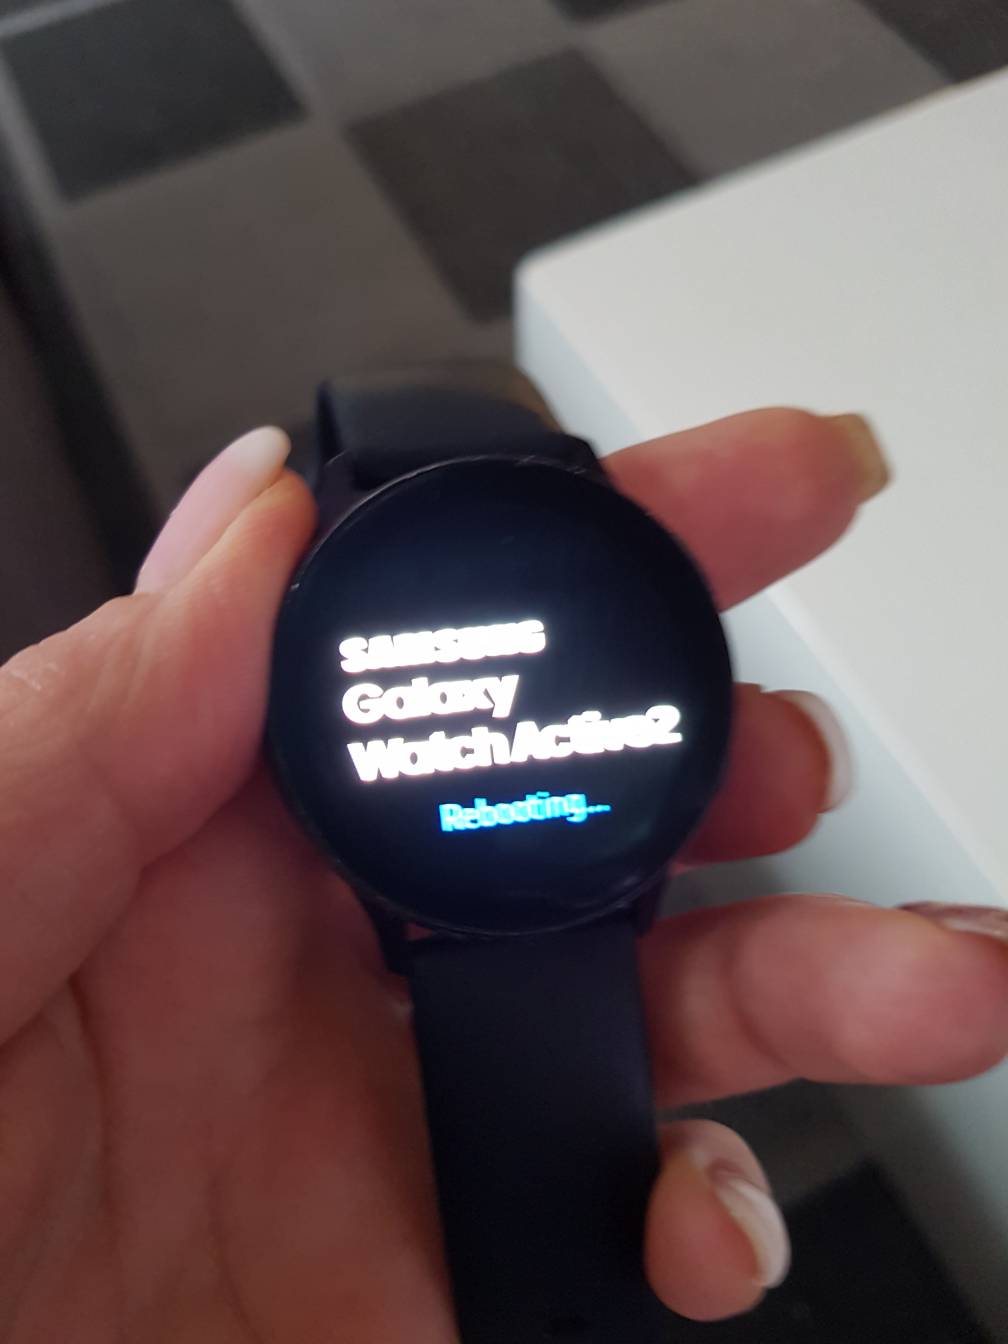 Galaxy smartwatch geht nicht mehr an - Samsung Community